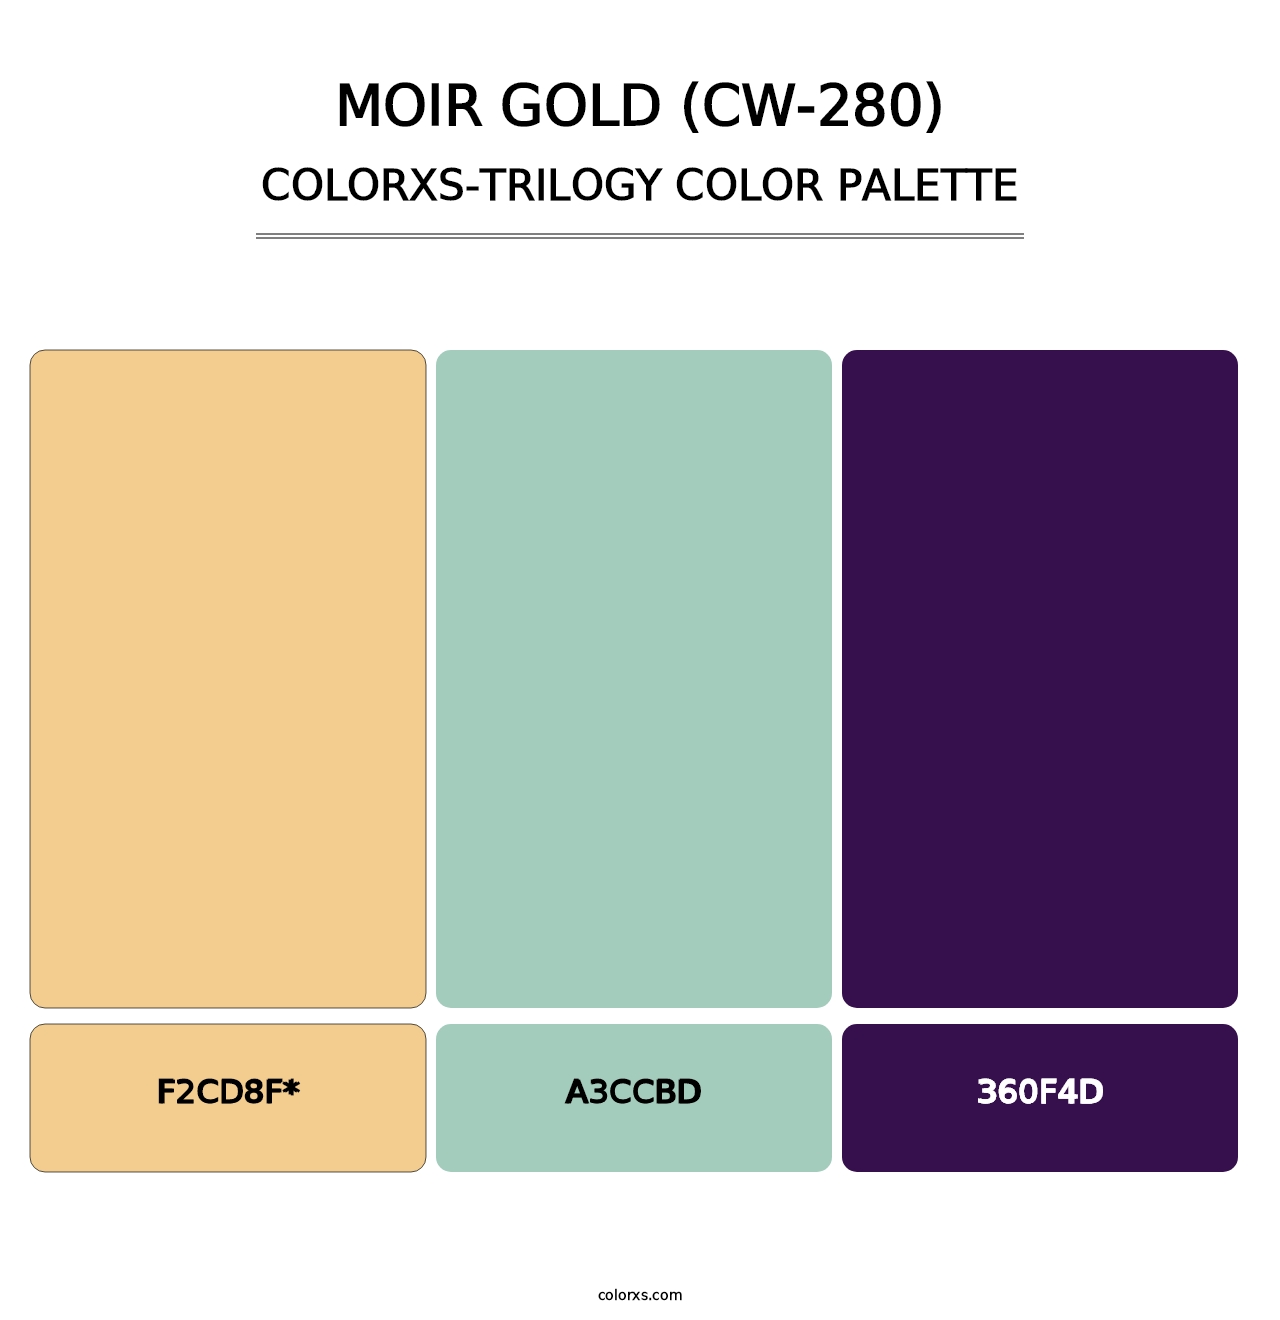 Moir Gold (CW-280) - Colorxs Trilogy Palette